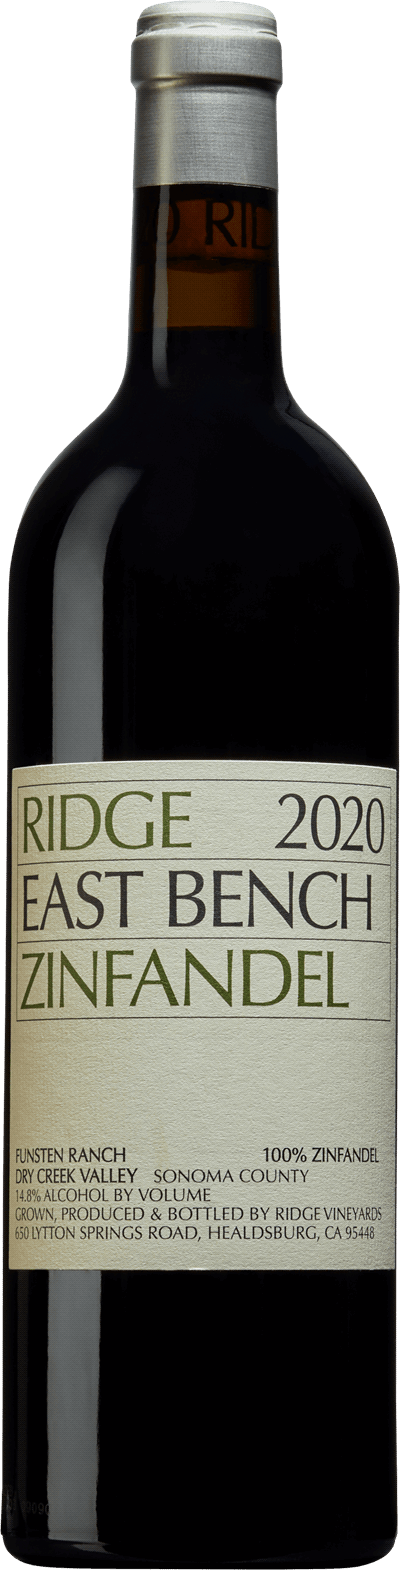 Ridge East Bench Zinfandel